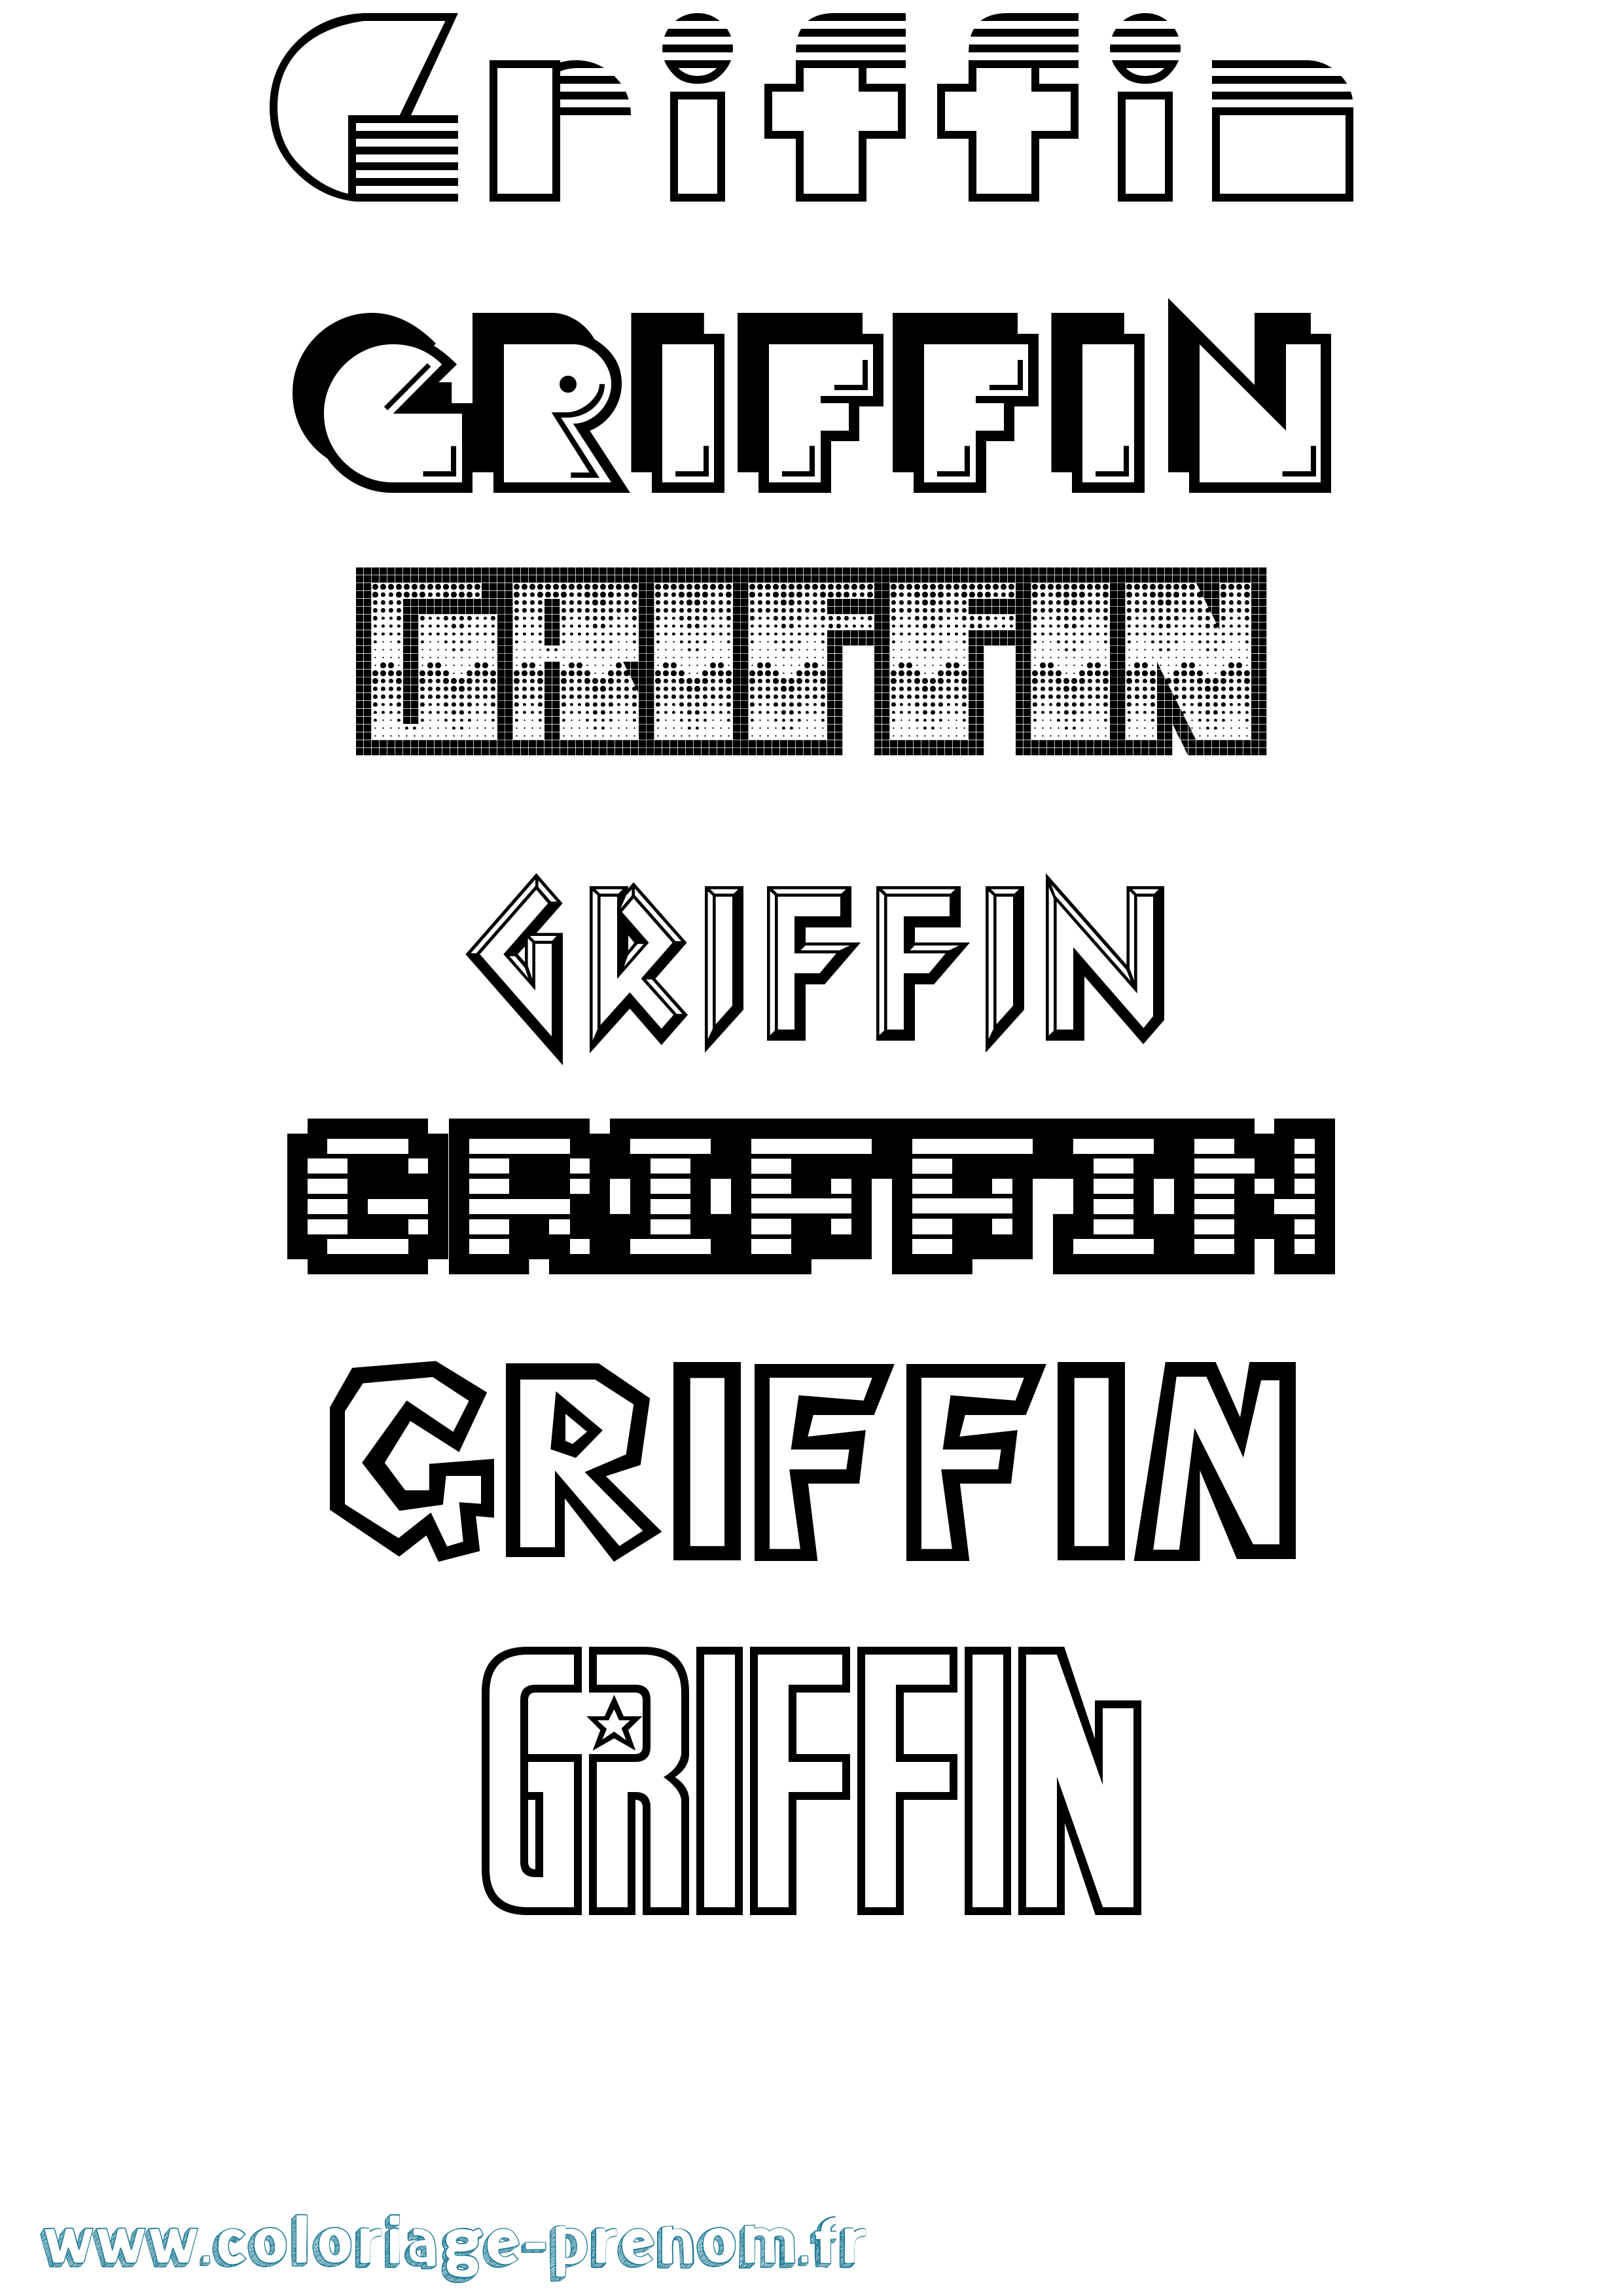 Coloriage prénom Griffin Jeux Vidéos